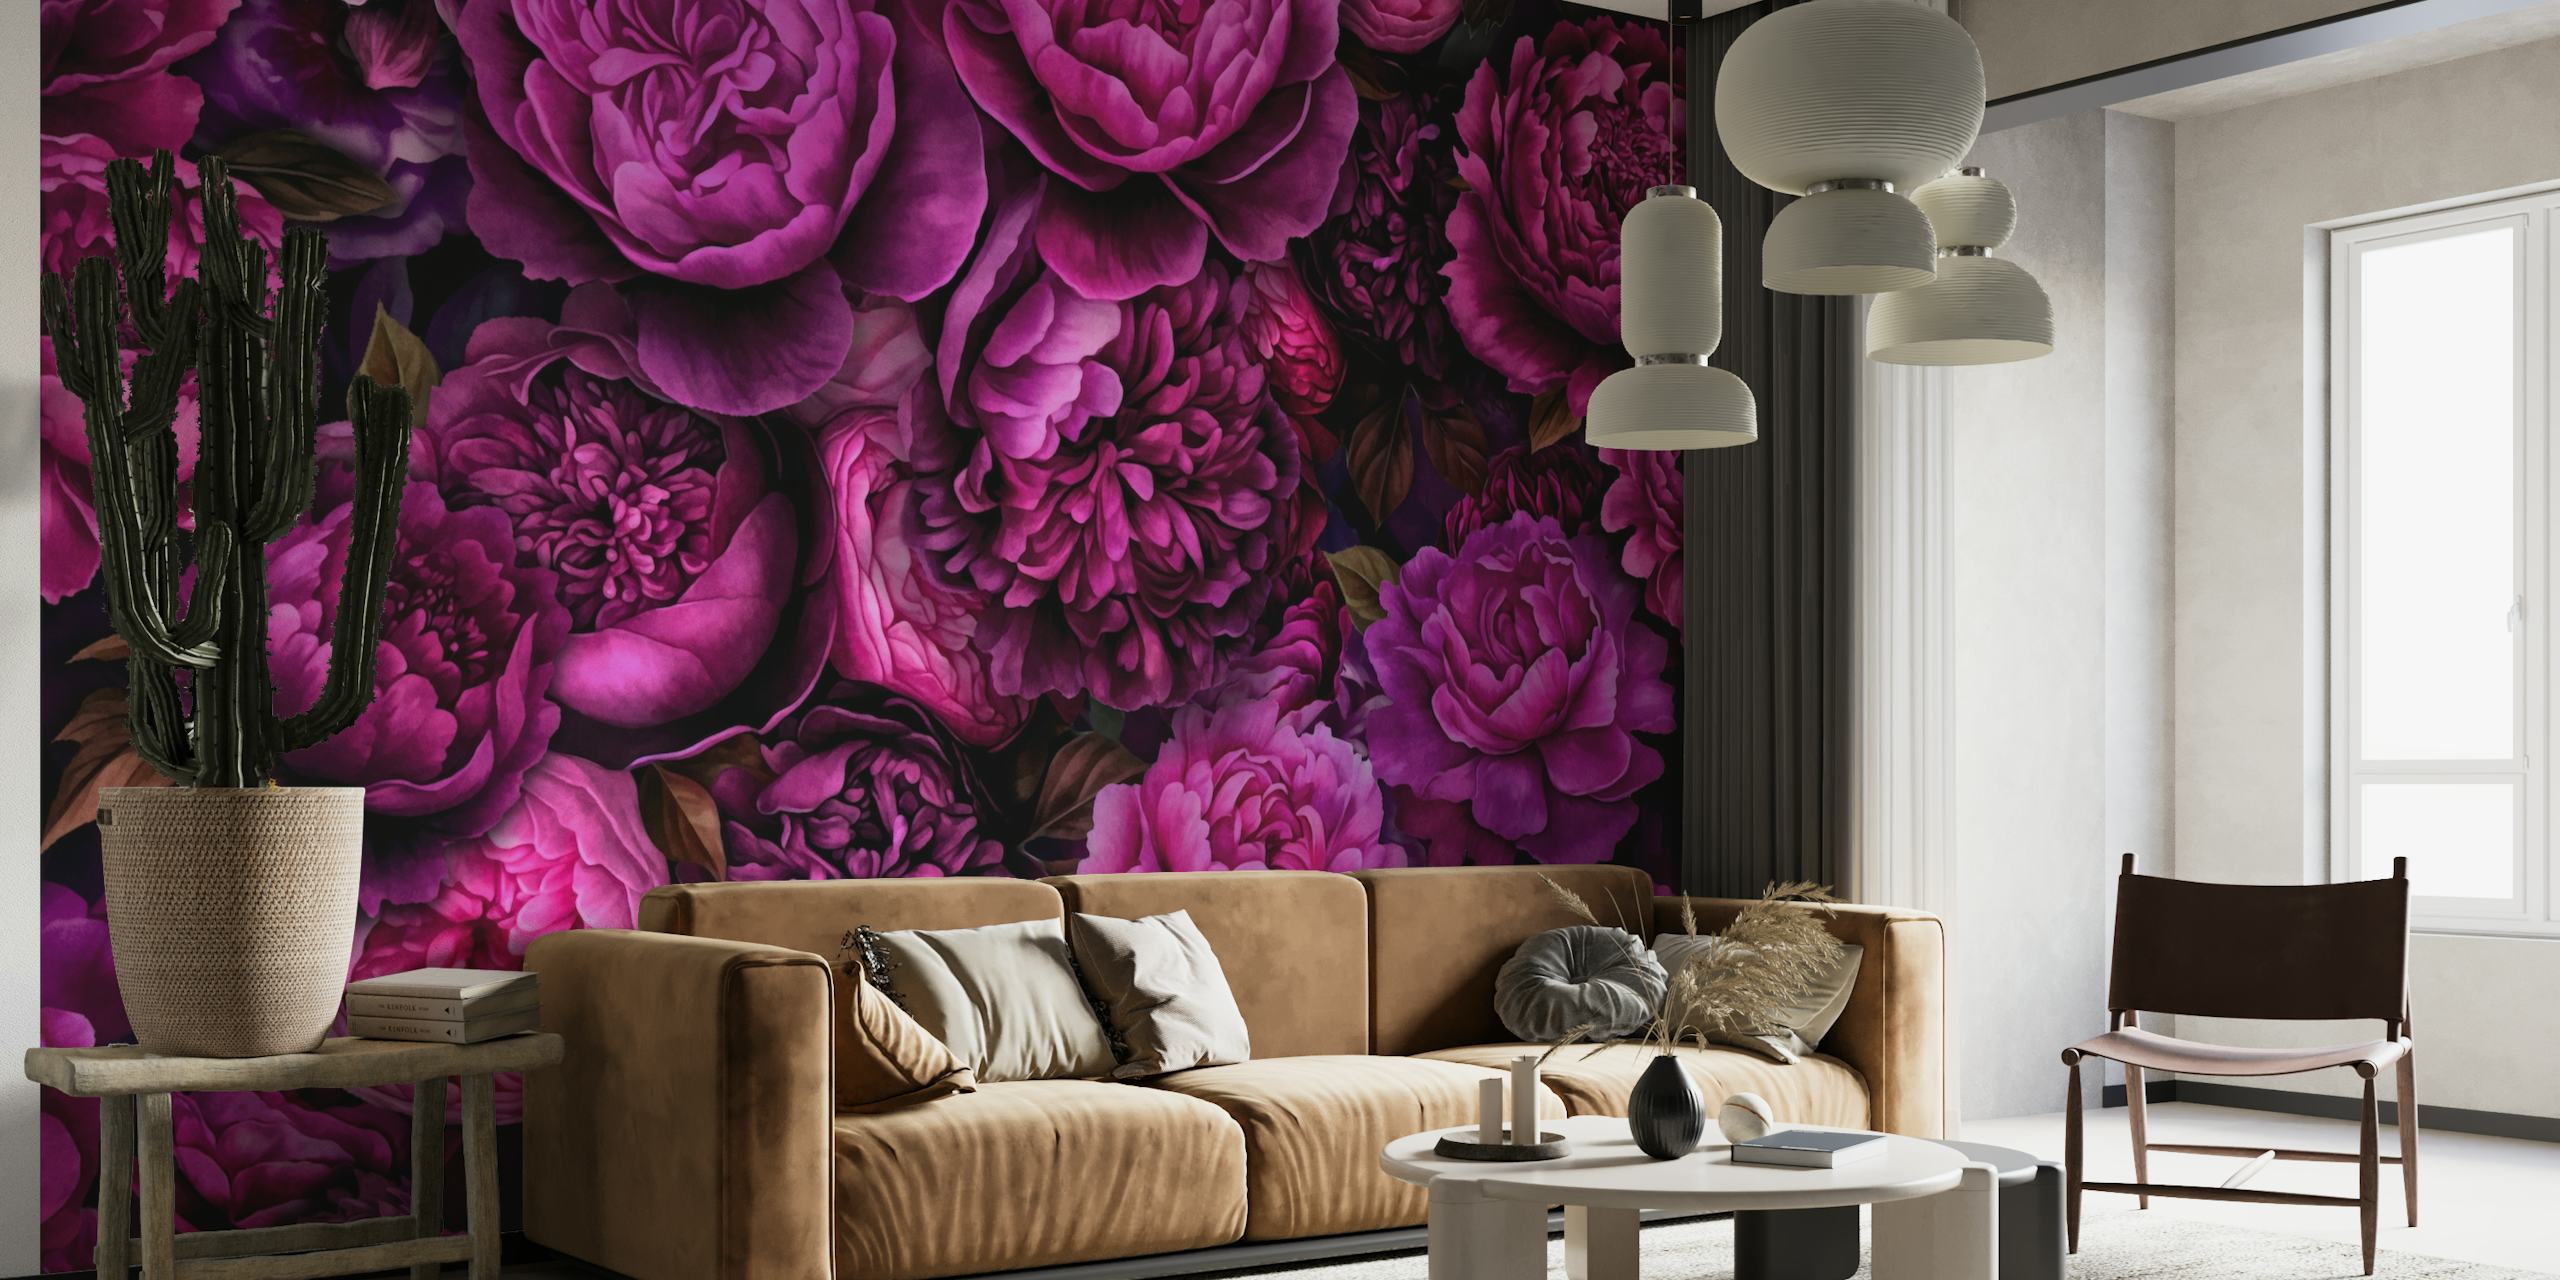 Lussuose rose rosa e viola su uno sfondo scuro nel murale Moody Flowers Pink Byzantine Opulence